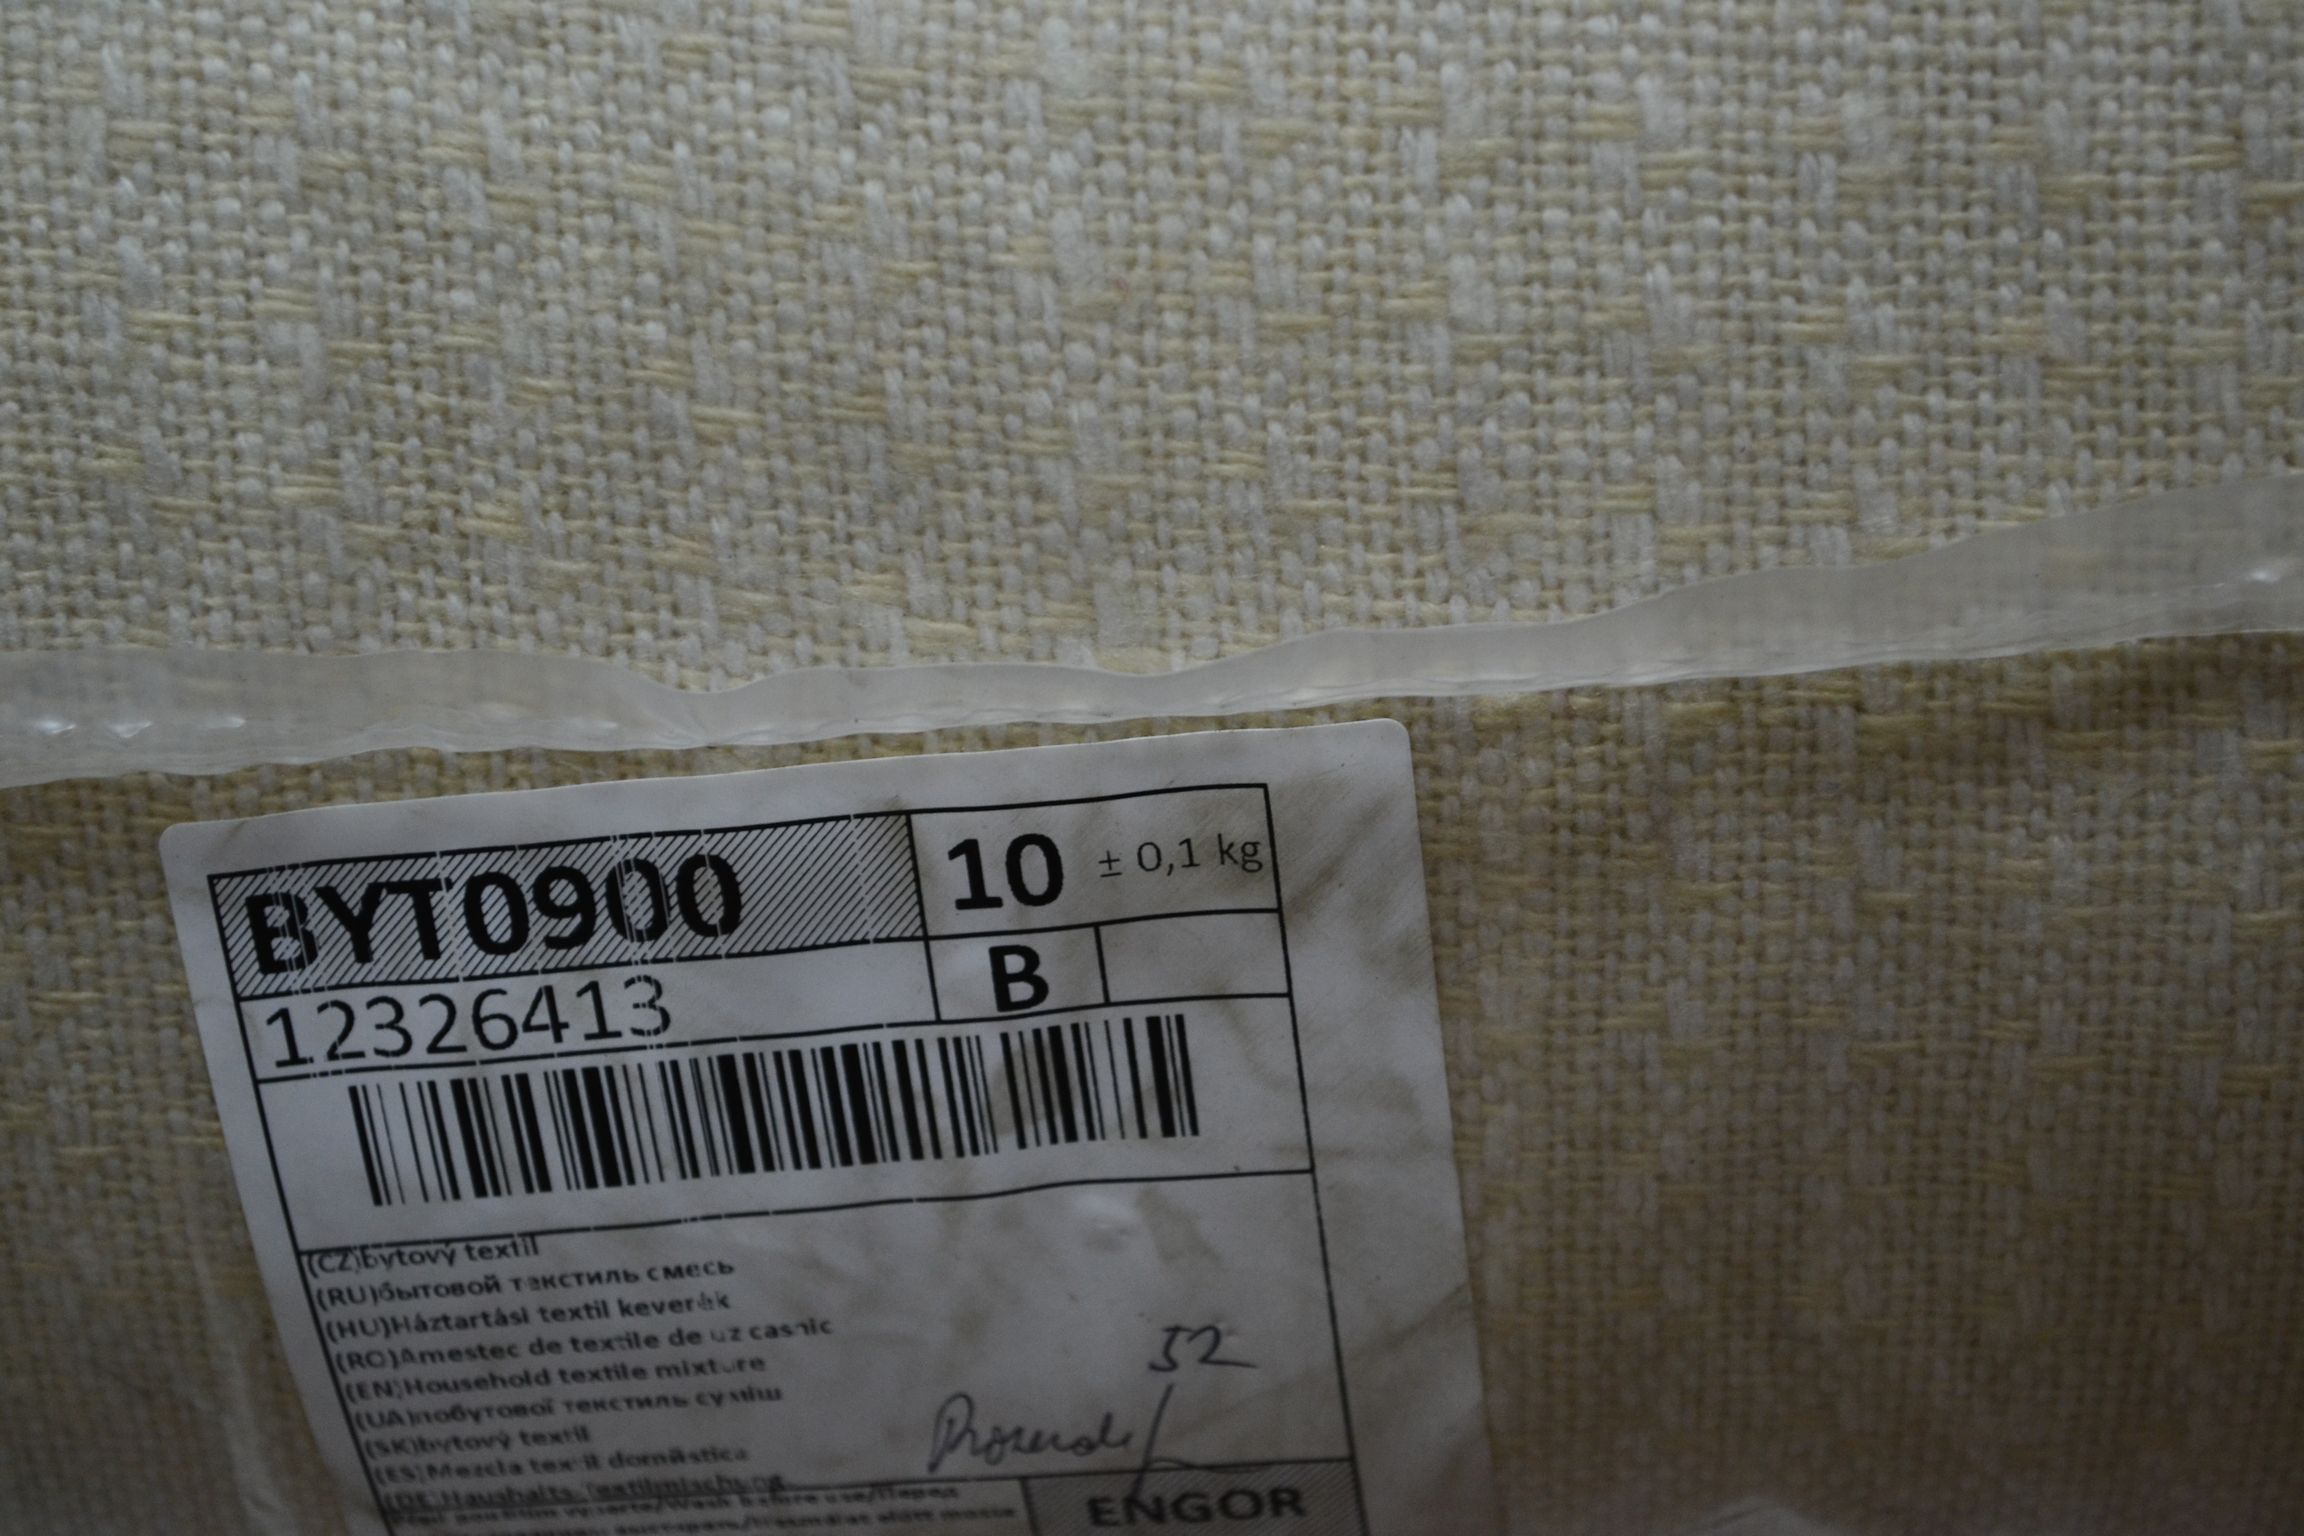 BYT0900 Смесь бытового текстиля; код мешка 12326413